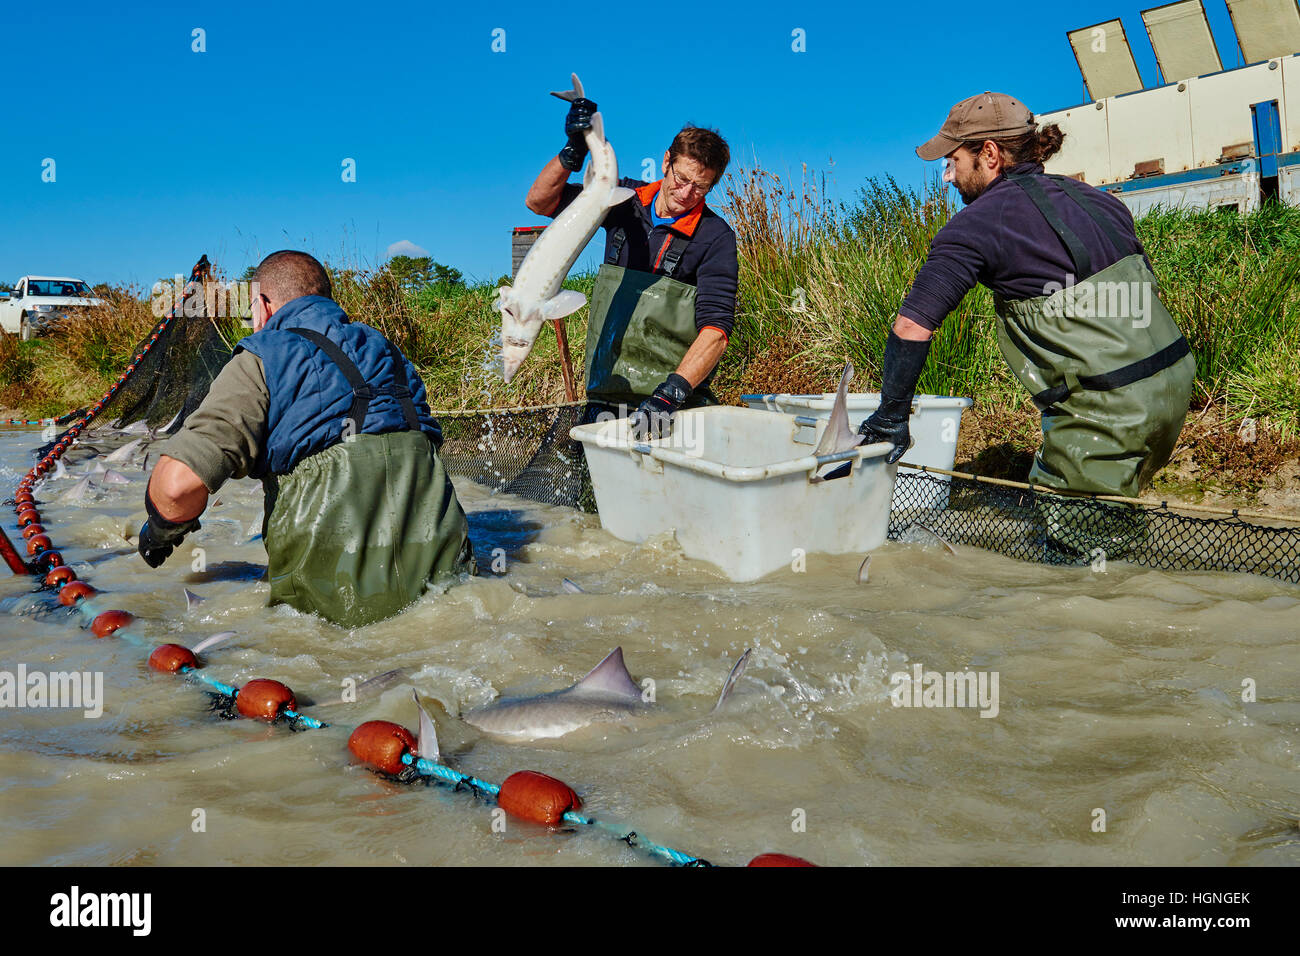 France, Loire-et-Cher (41), du caviar de Sologne, pisciculture Hennequart, la pêche à l'esturgeon Banque D'Images